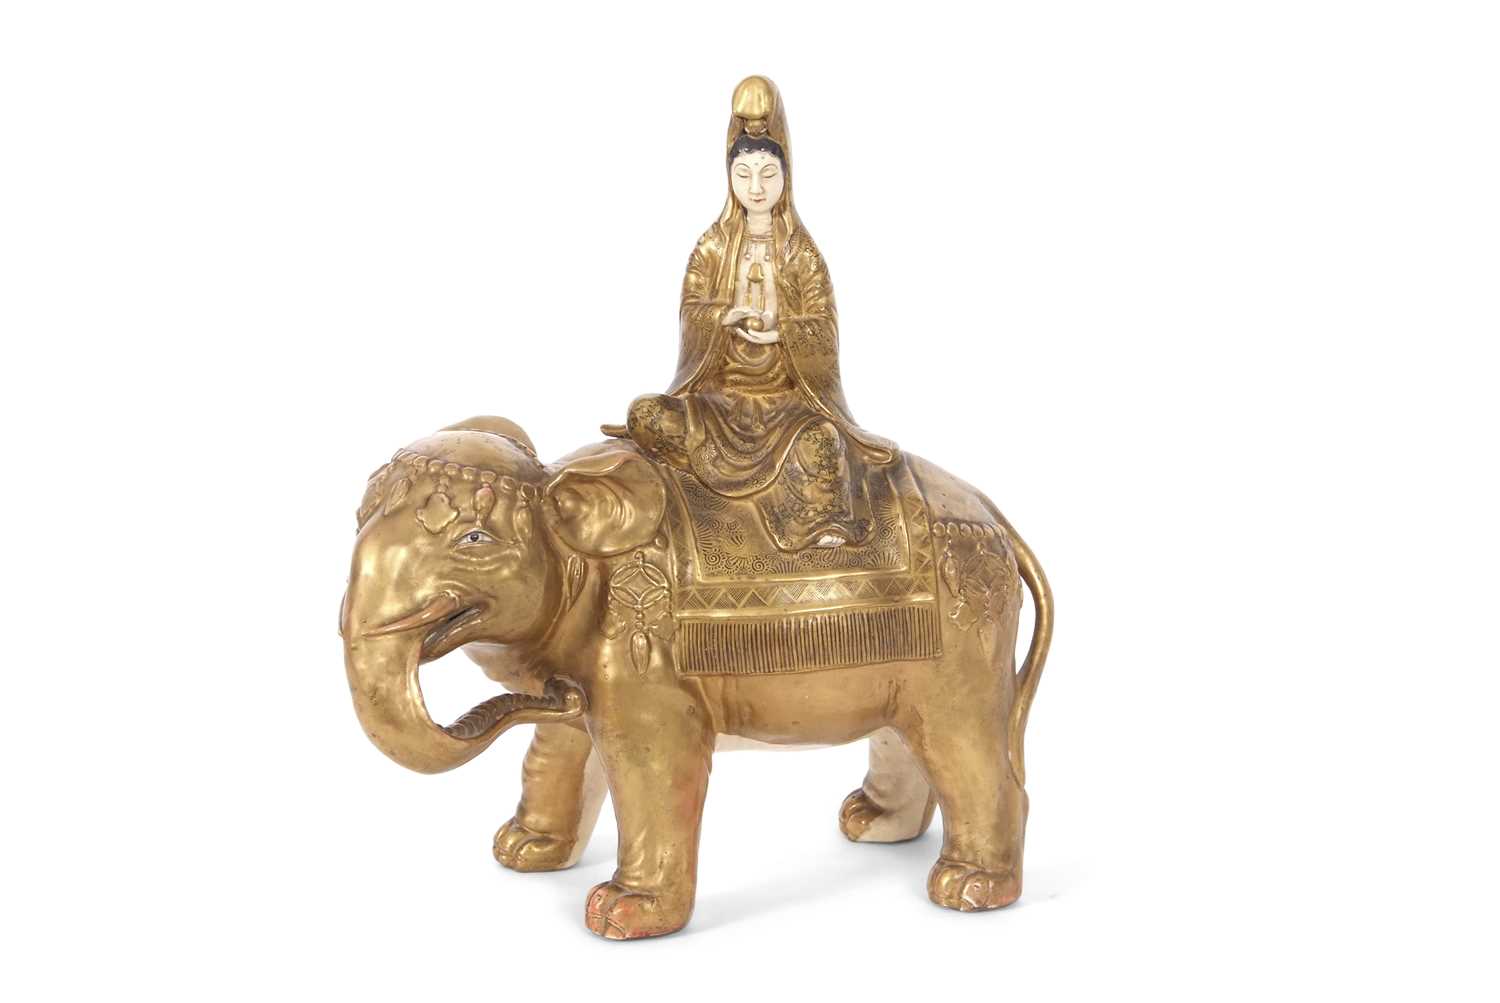 A Japanese Meiji period Satsuma model of an elephant with Geisha seated on its back